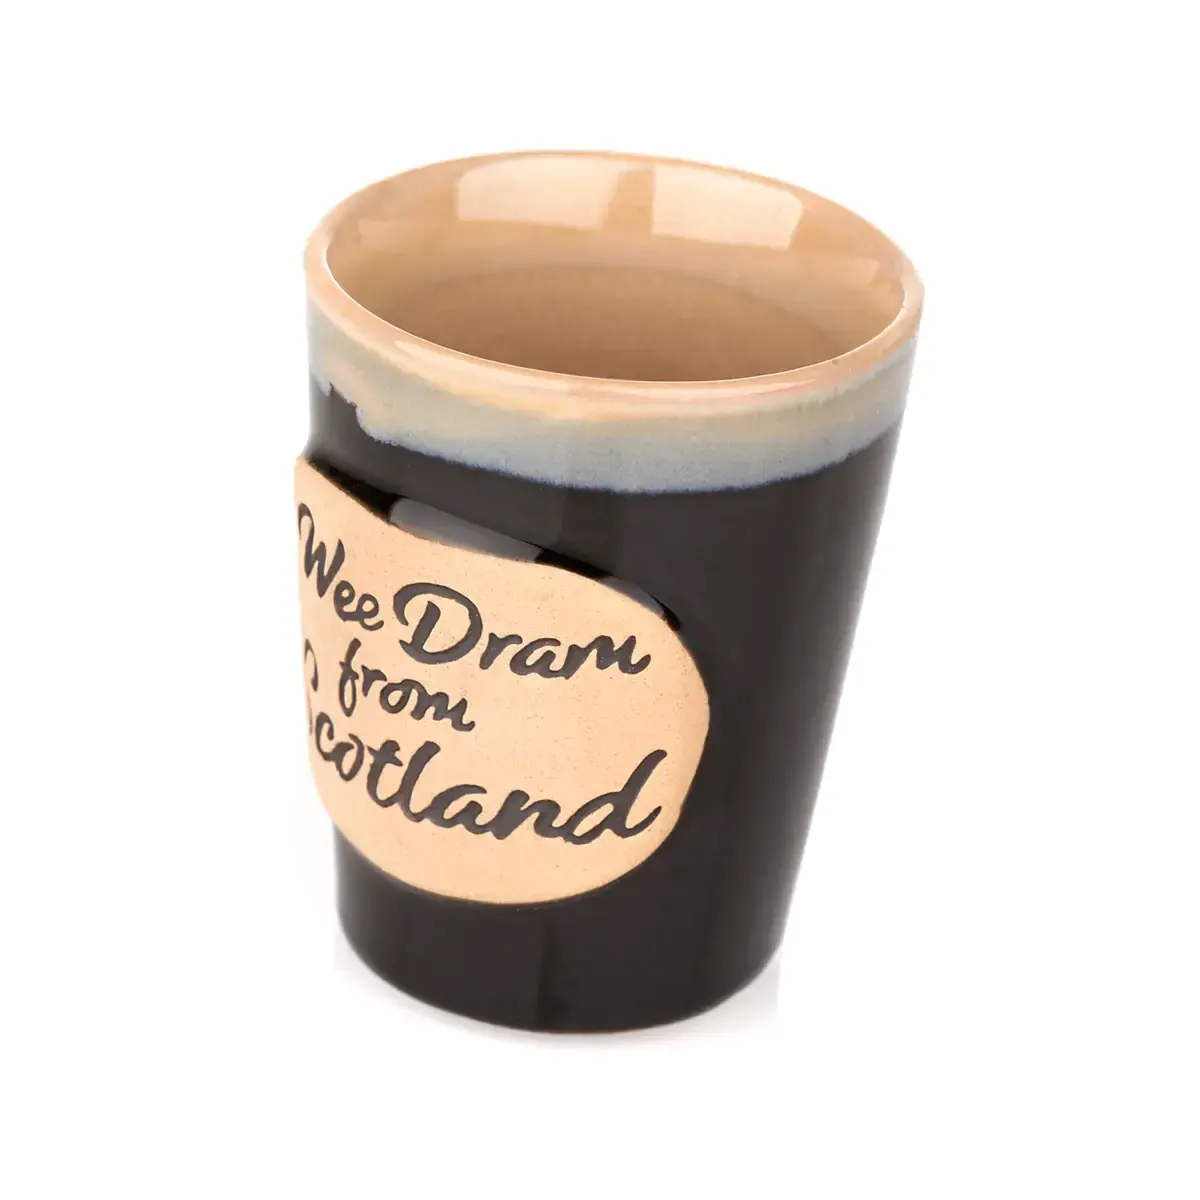 Wee Dram Stoneware Shot Cup - Schottischer Shotbecher aus Keramik